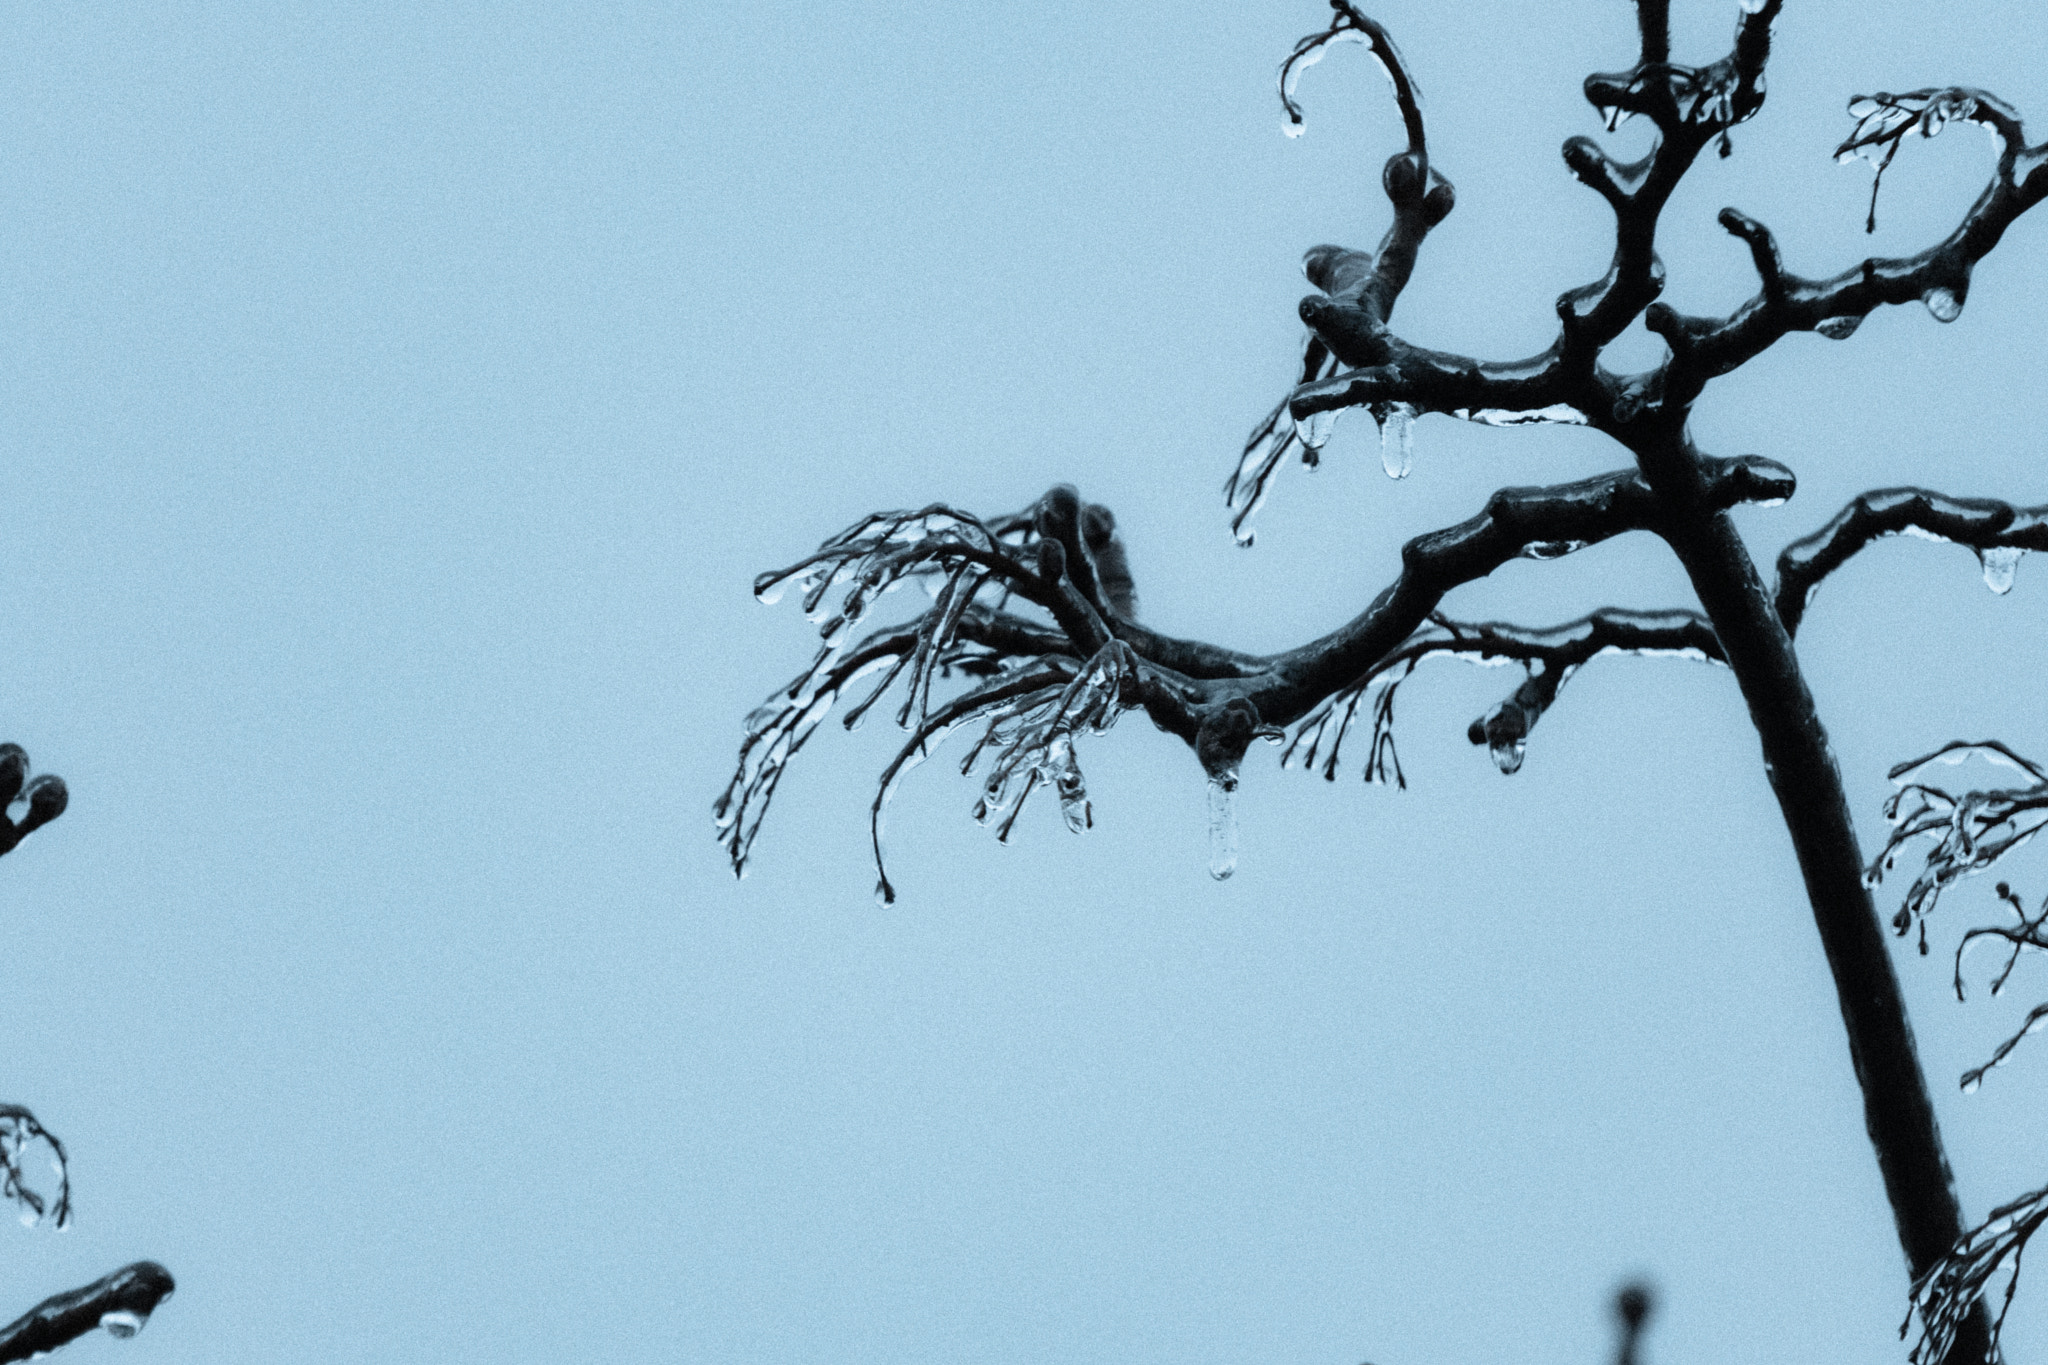 Sony a6300 sample photo. Frozen rain on tree photography